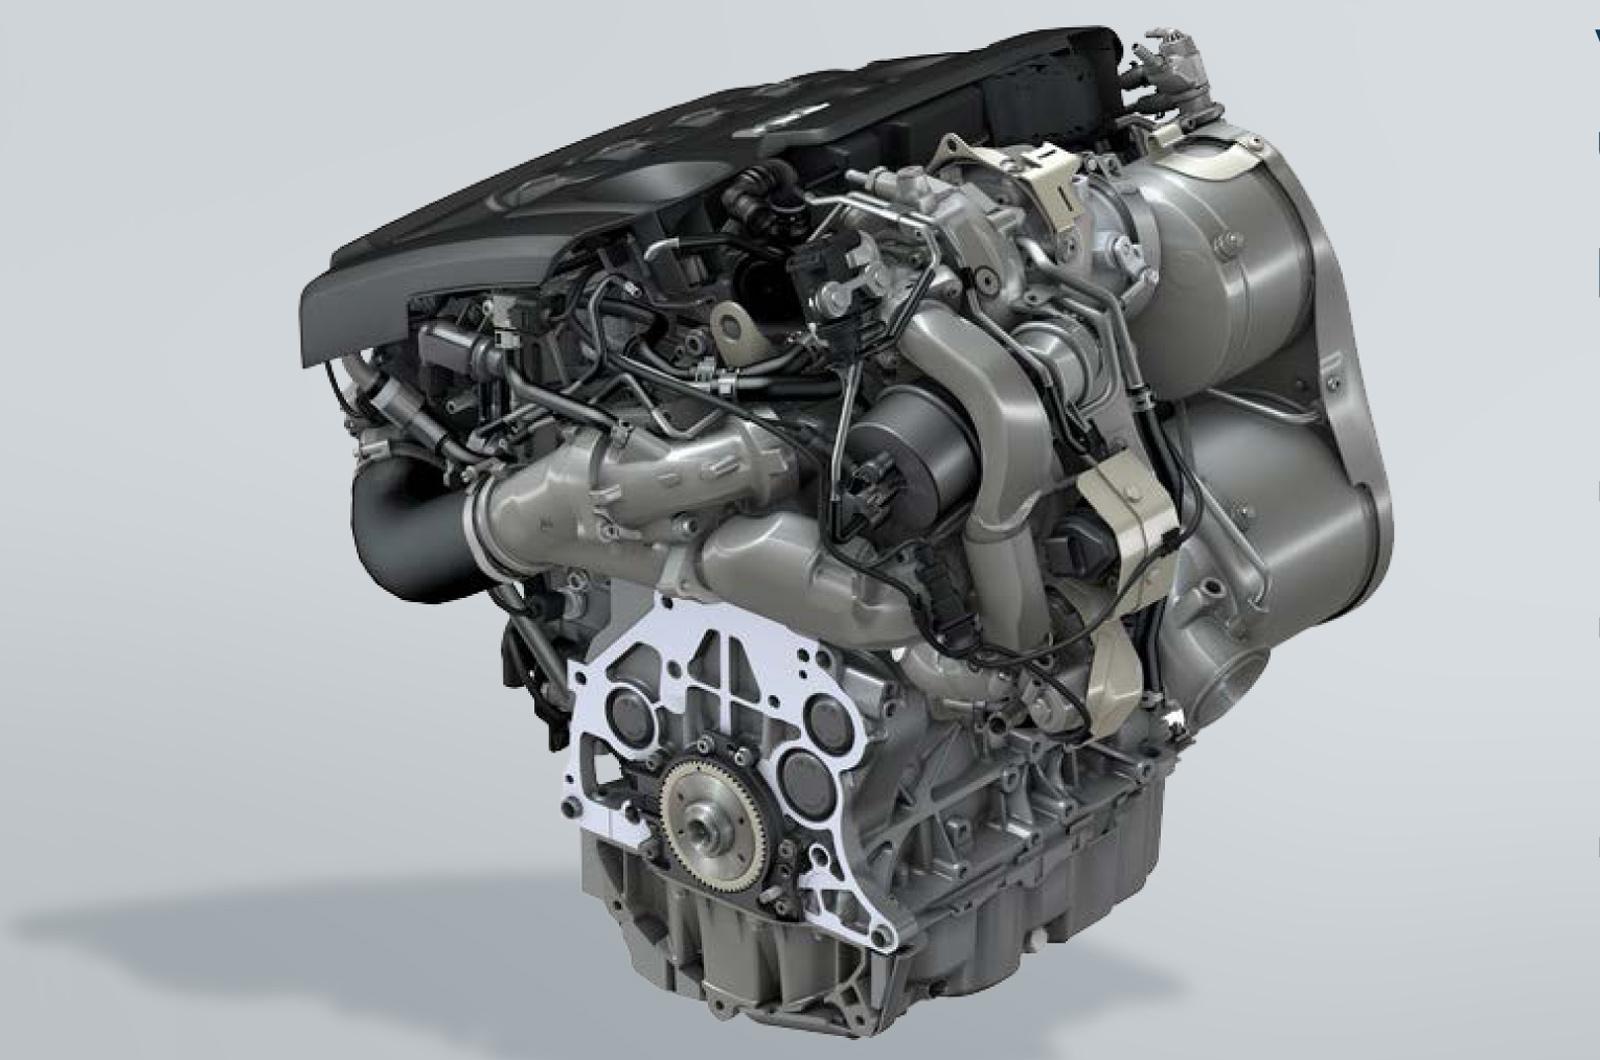 VW reveals new 2L diesel engine, 10speed DSG gearbox